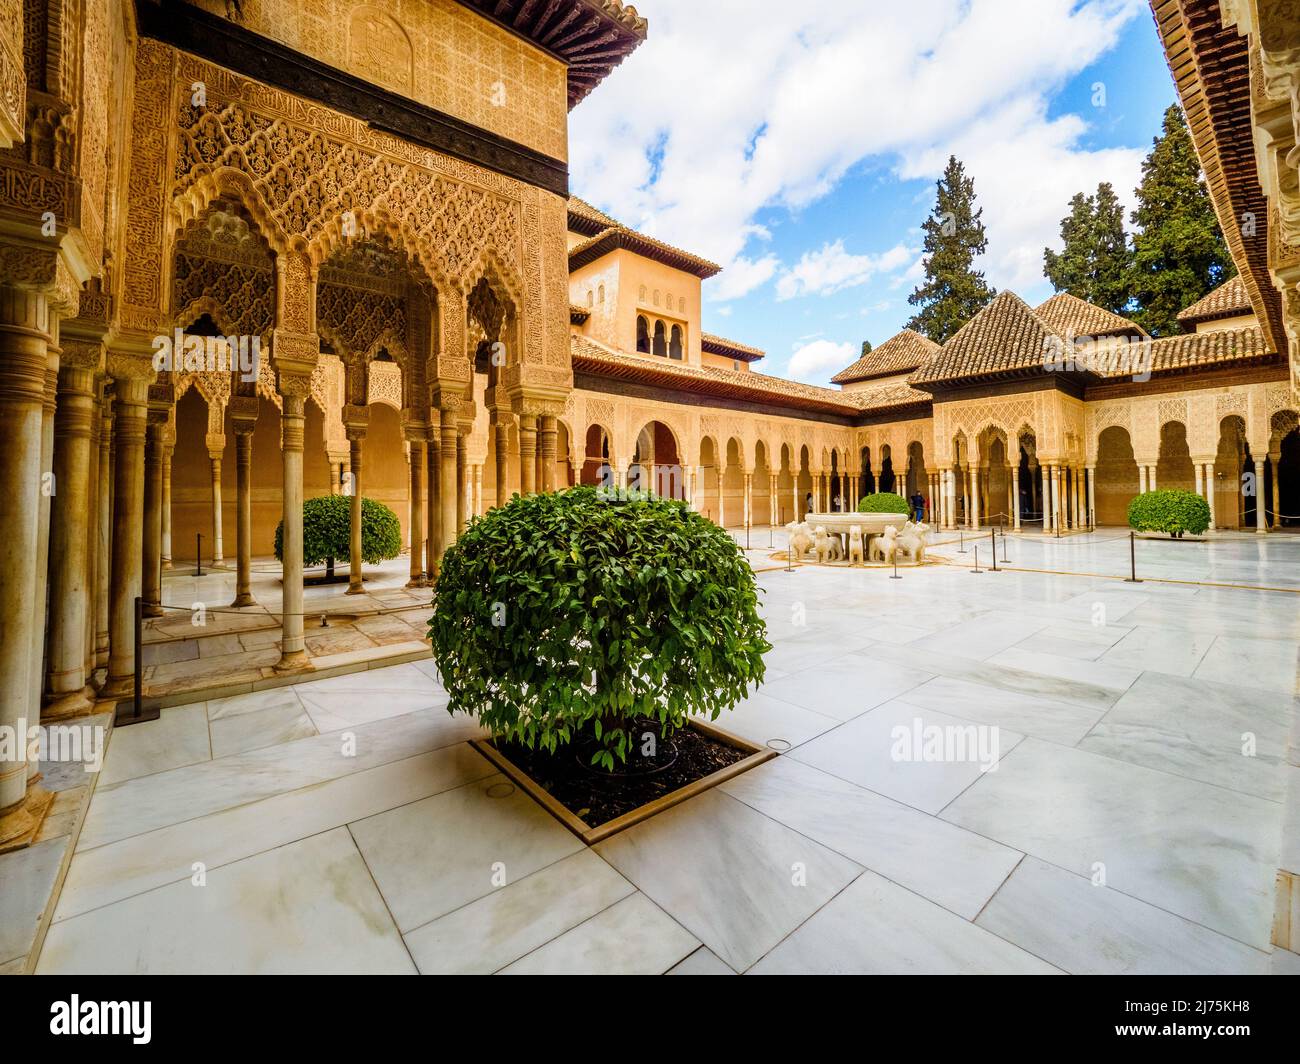 Cour des Lions du complexe des palais royaux de Nasrid - complexe de l'Alhambra - Grenade, Espagne Banque D'Images